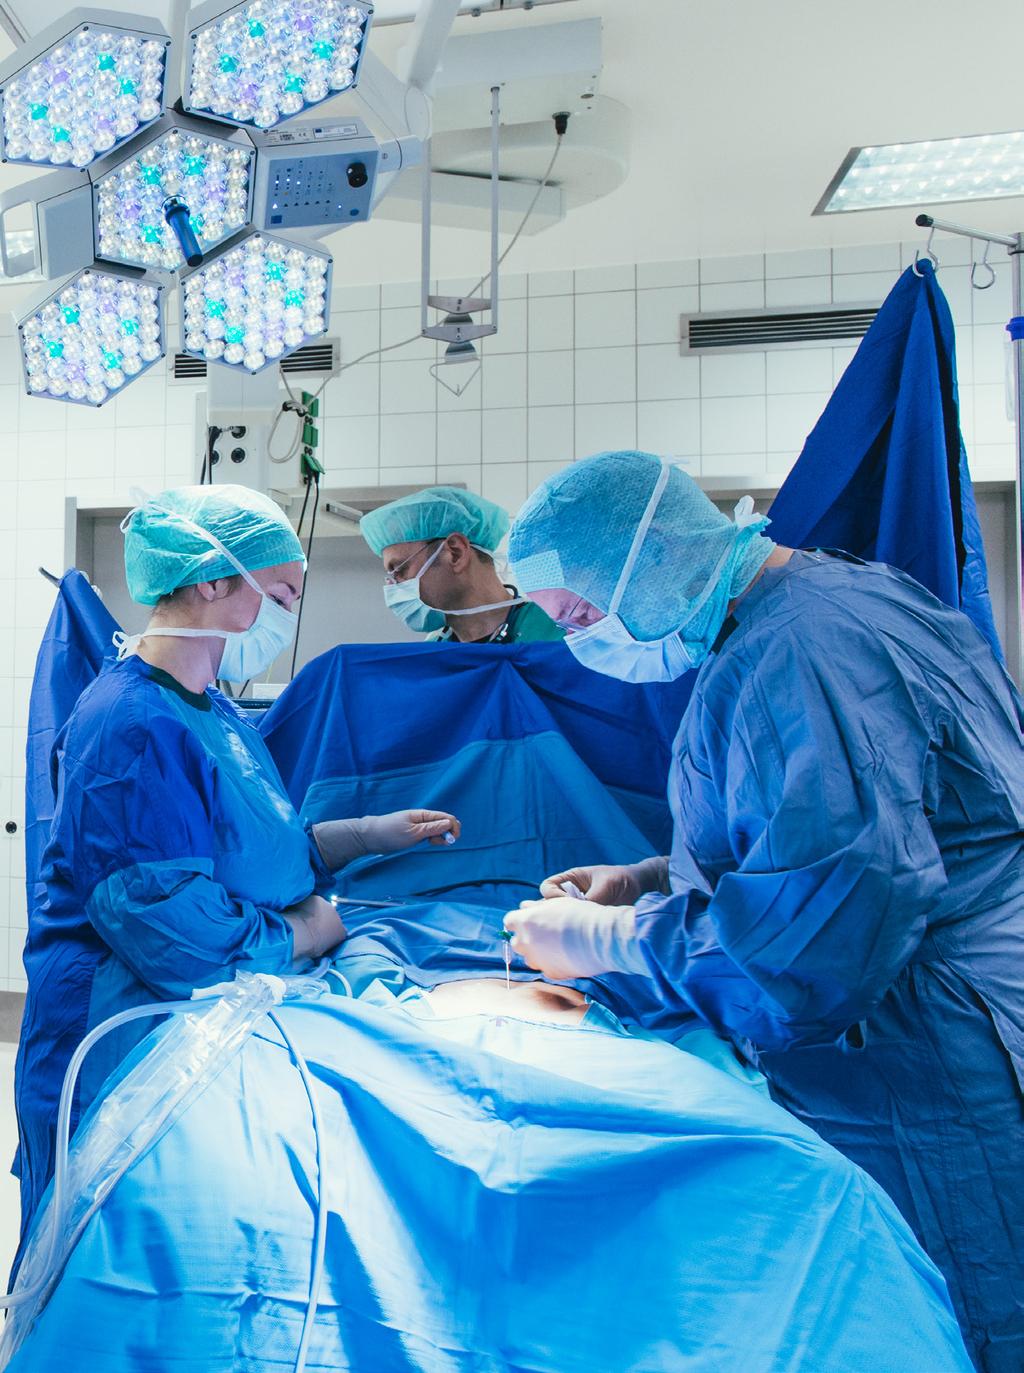 Gynäkologie Minimal-invasive Chirurgie In der operativen Gynäkologie liegt hier einer unserer Schwerpunkte in schonenden und organerhaltenden Verfahren.